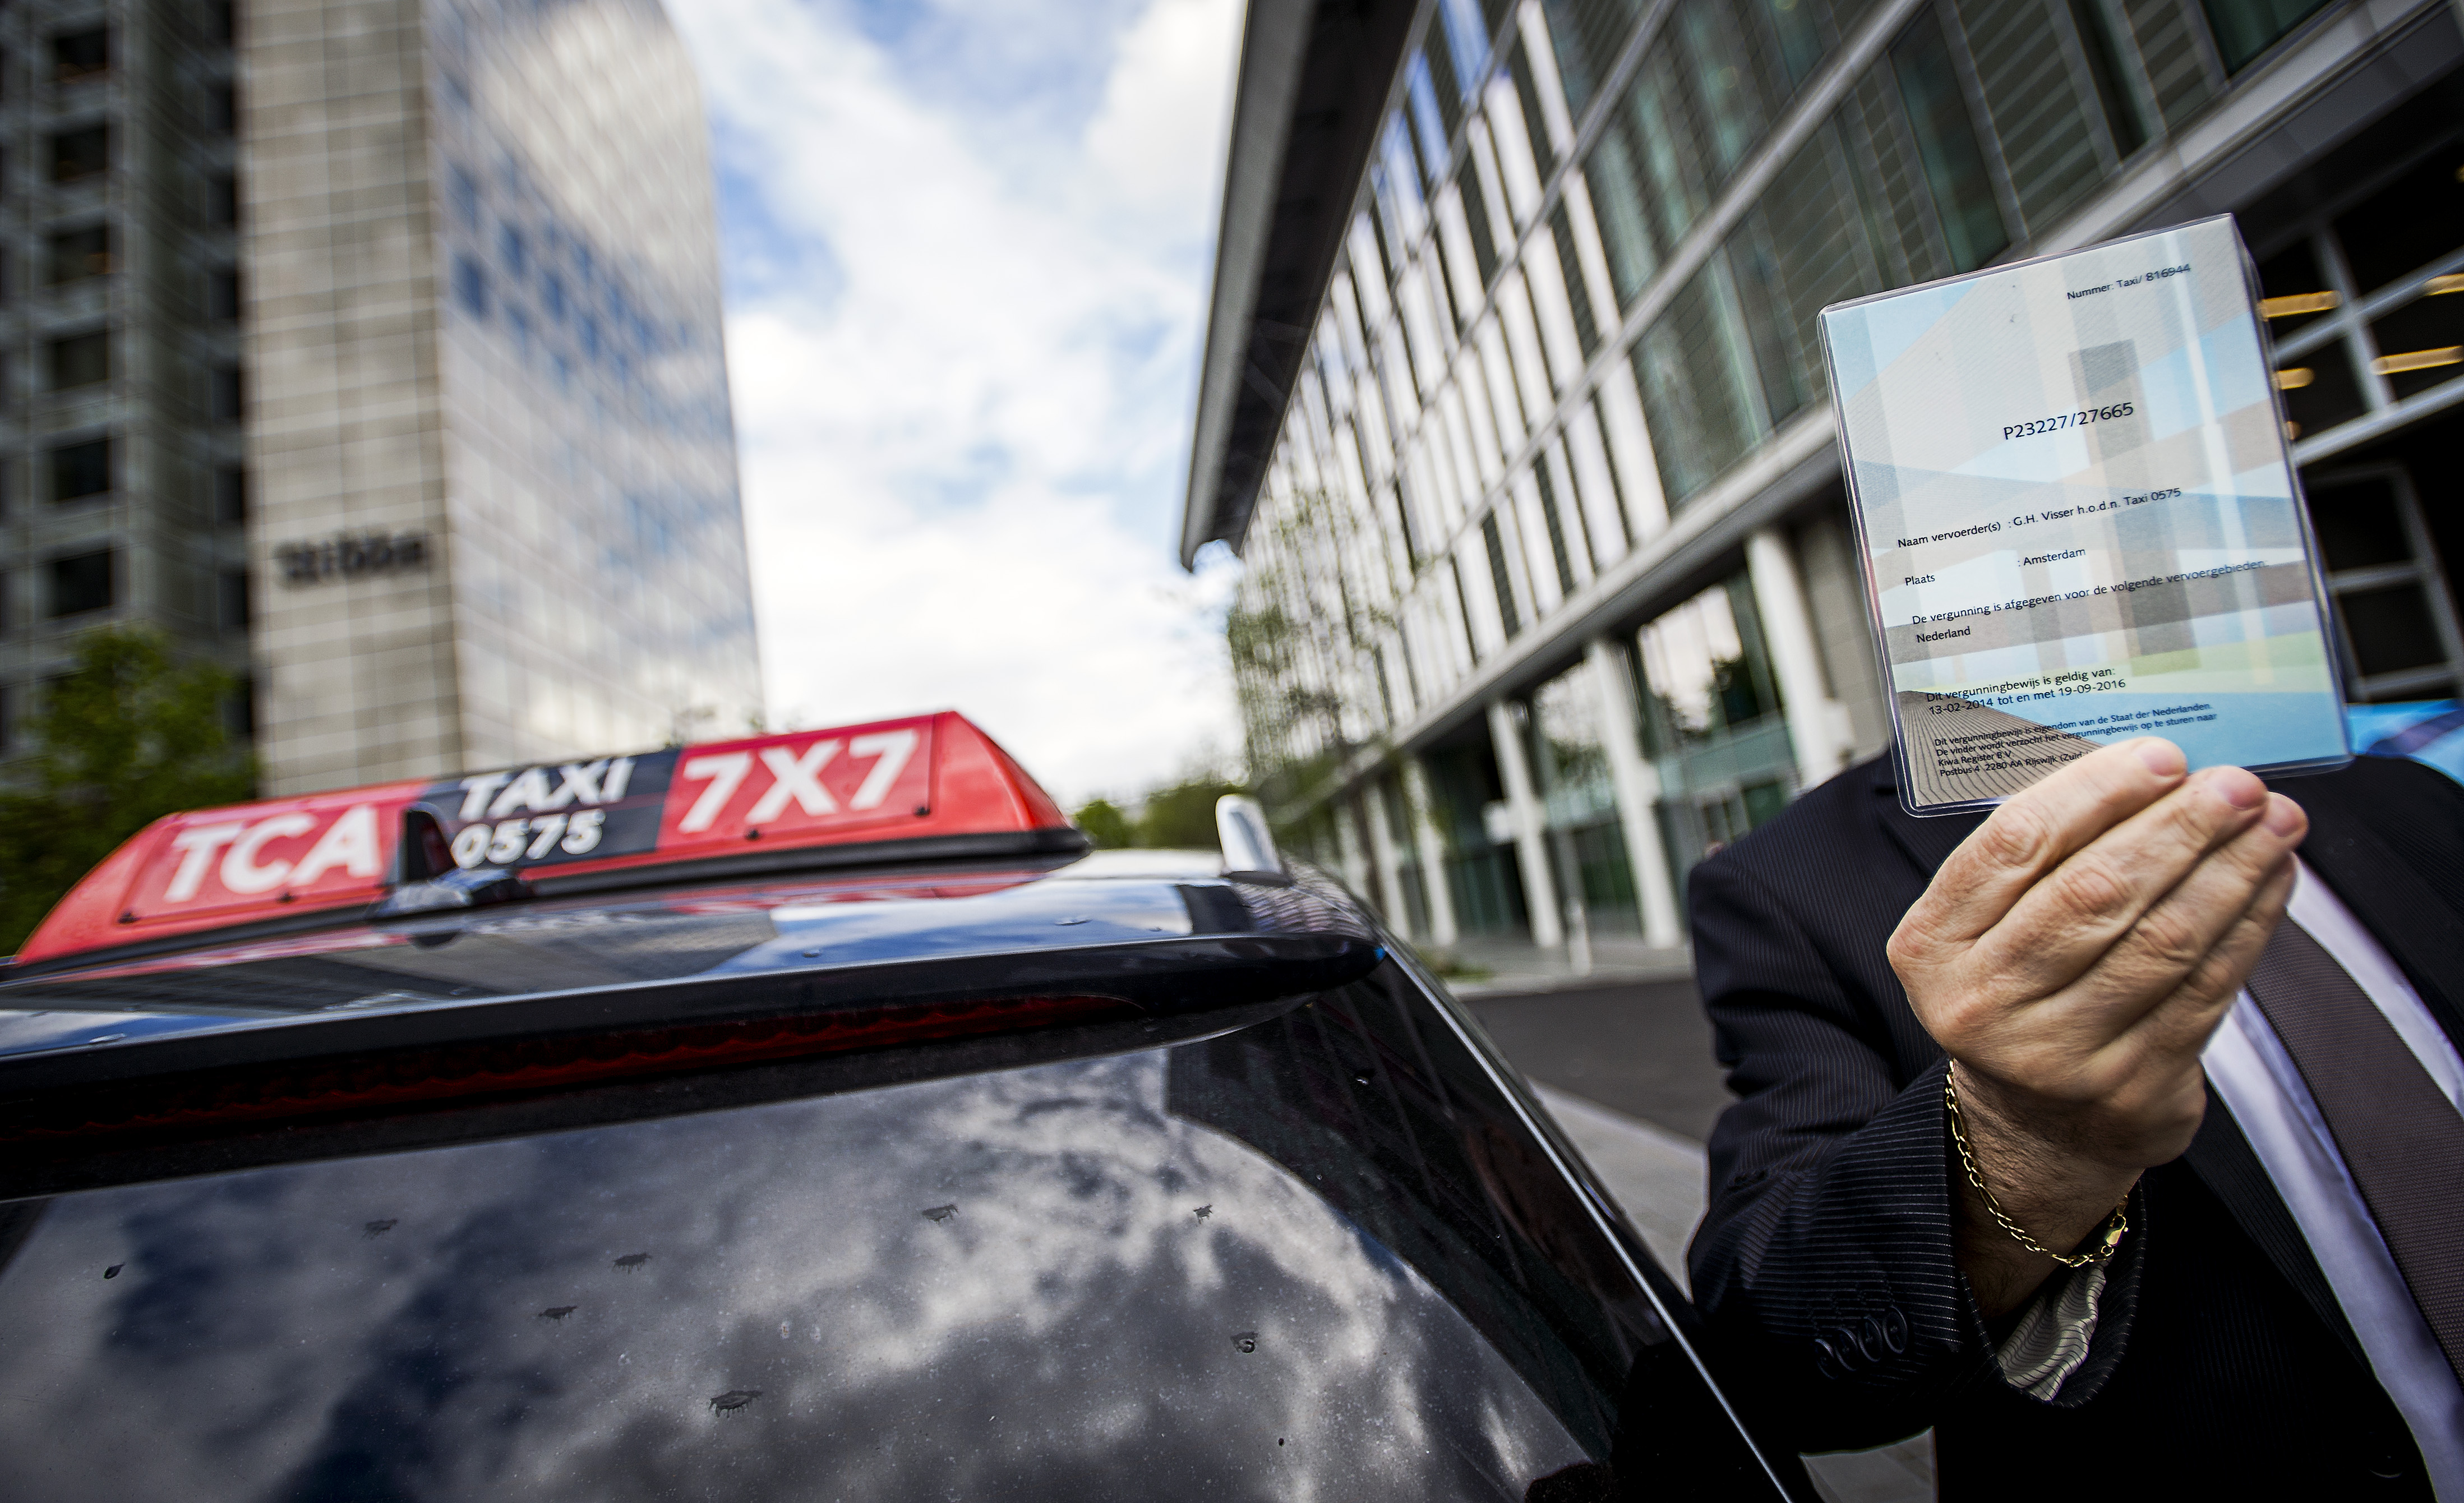 2015-05-06 11:59:33 AMSTERDAM - Een chauffeur van Taxi Centrale Amsterdam (TCA) toont zijn vergunning. ANP REMKO DE WAAL